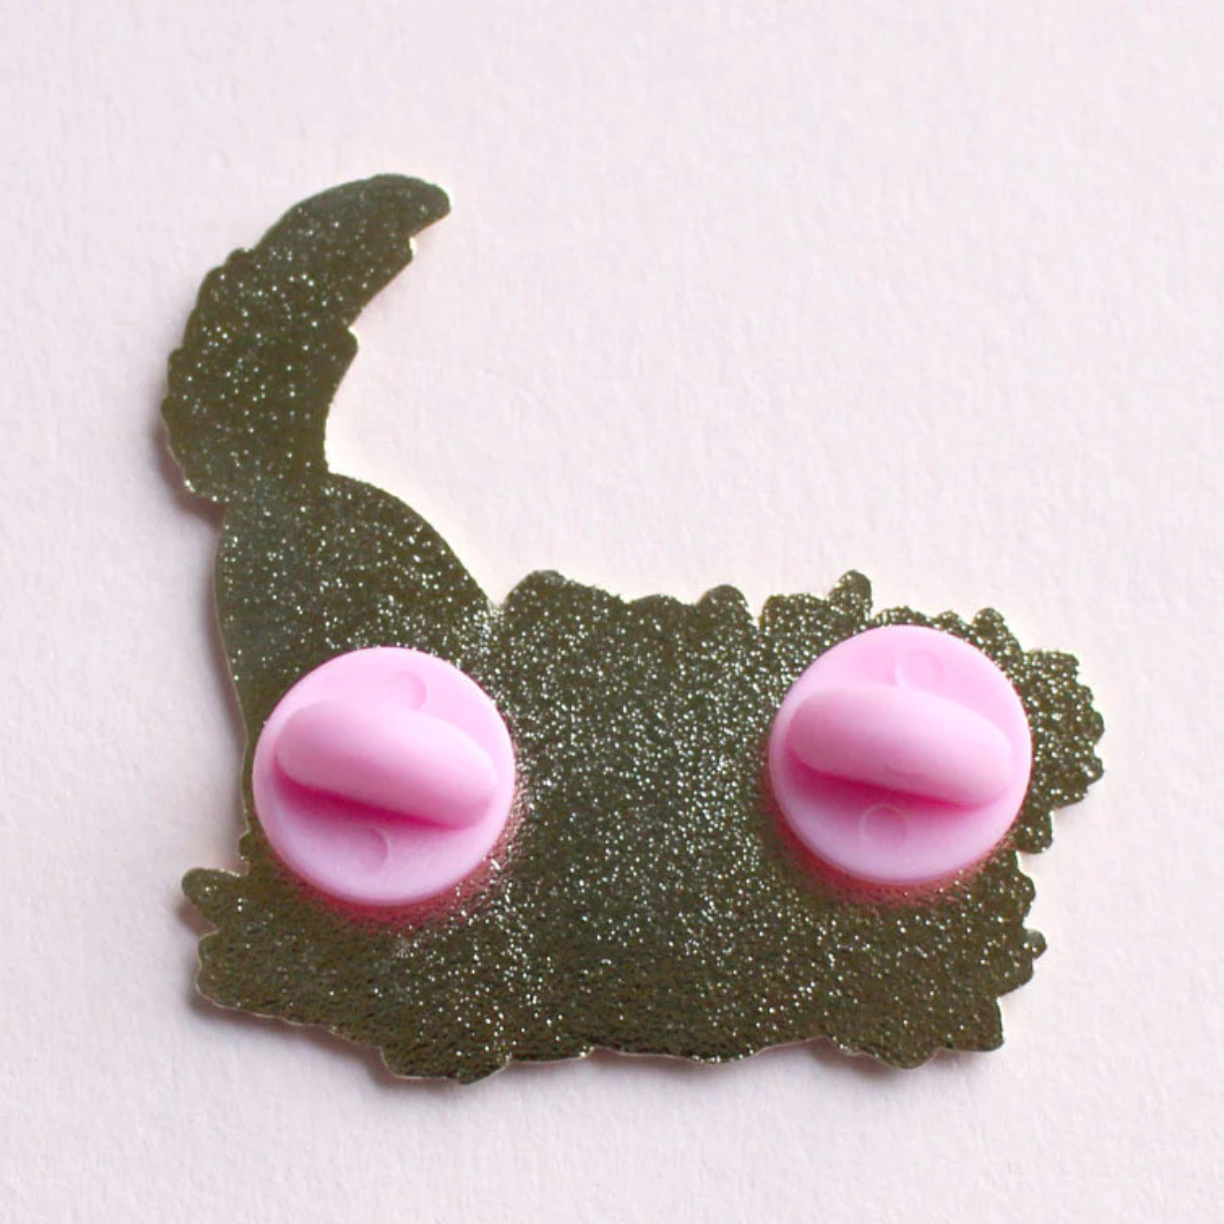 Cat in Succulents | Lapel Pin | Glitter Punk